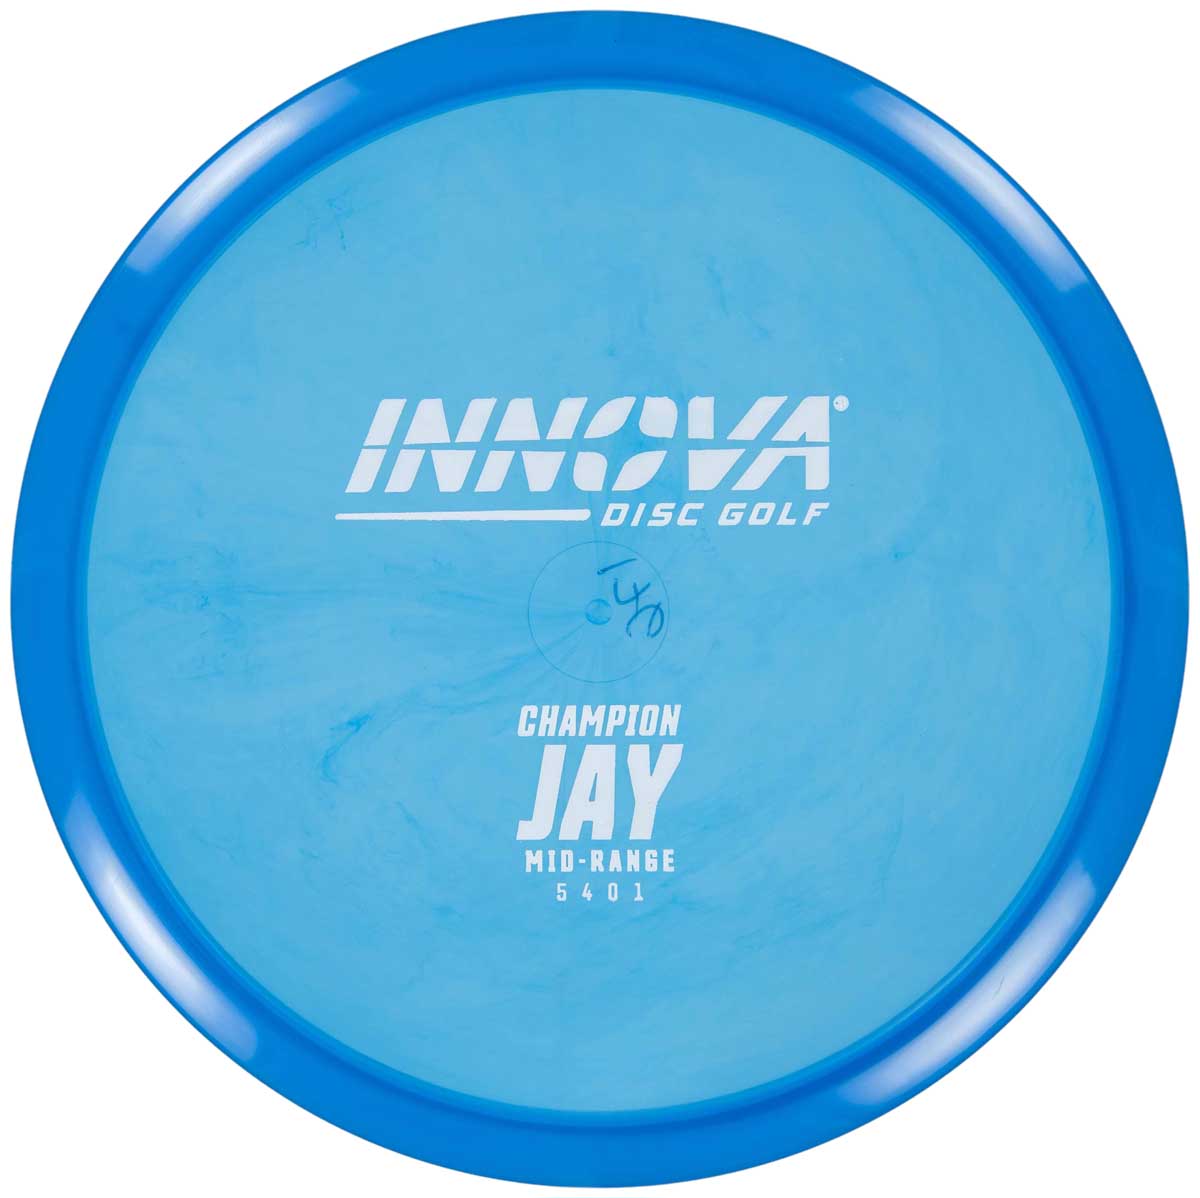 Innova Champion Jay. Blue color